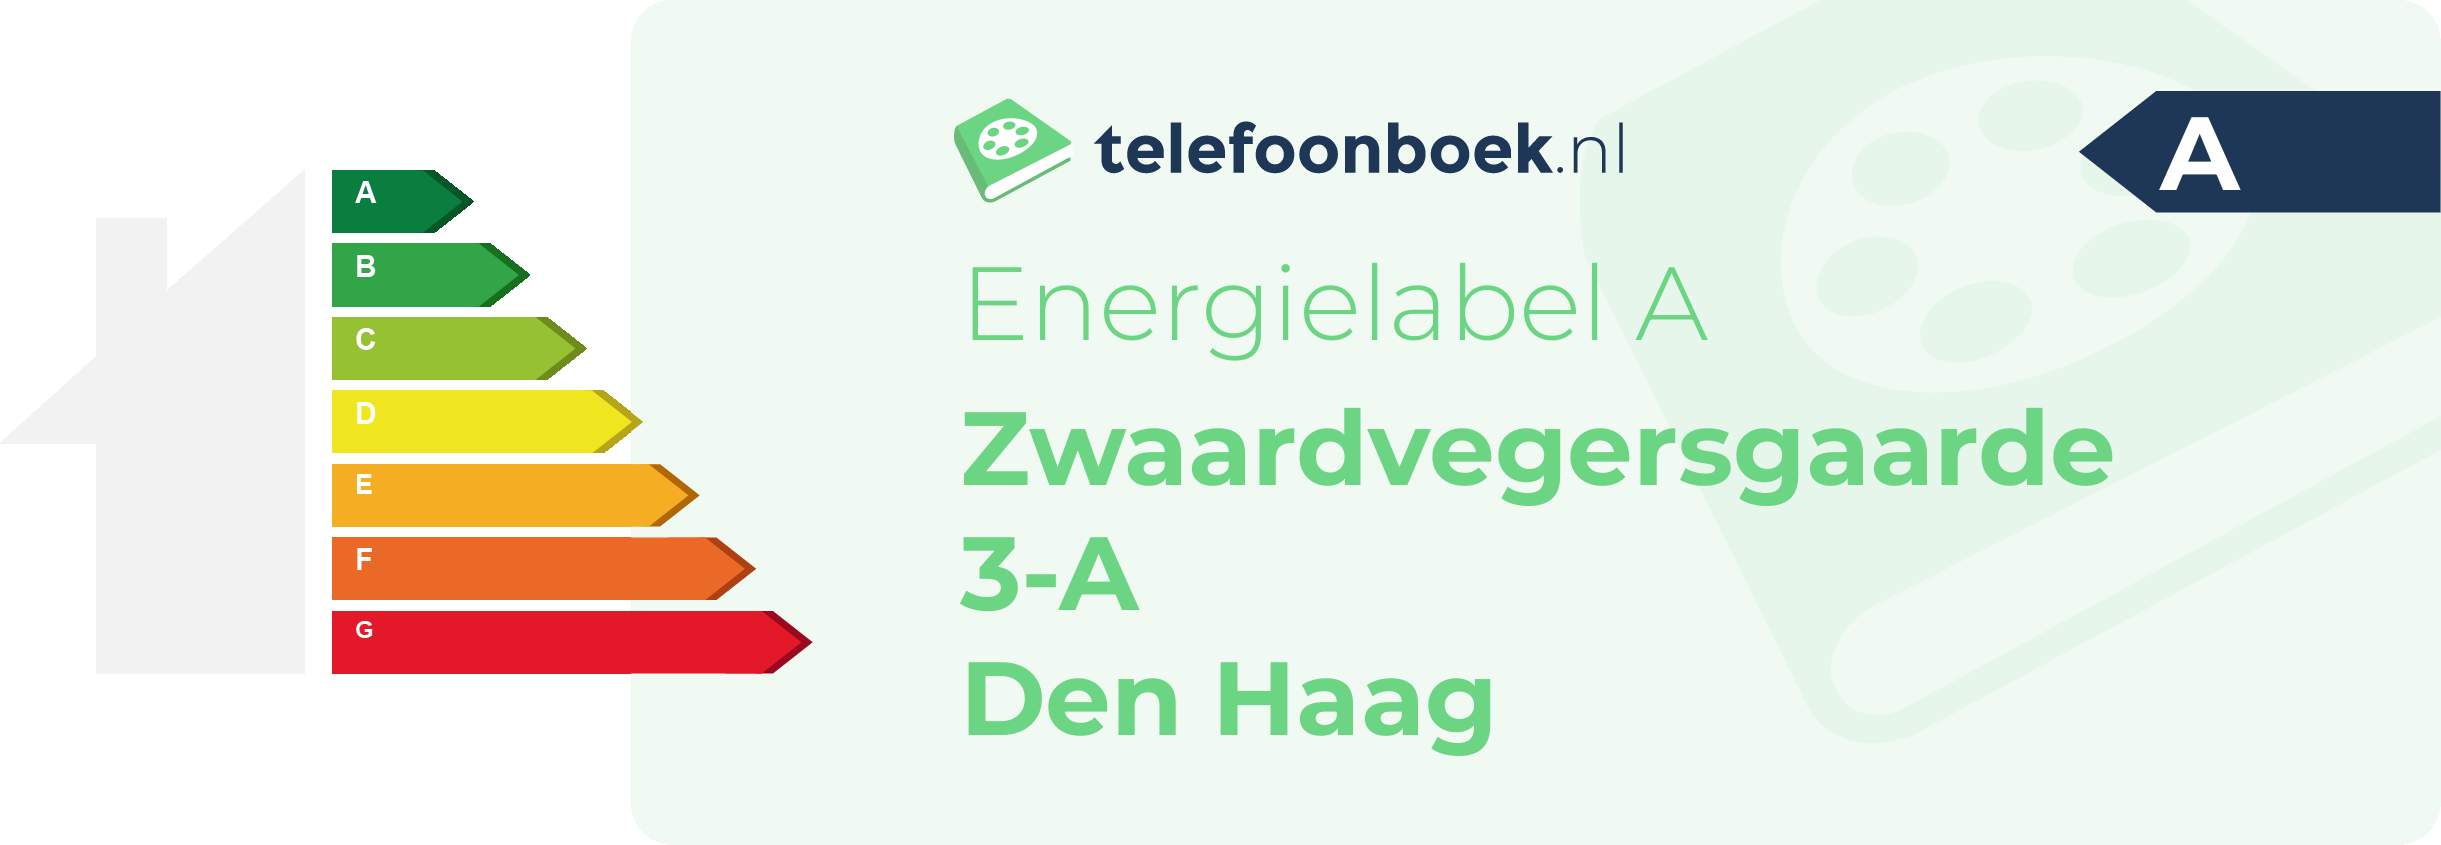 Energielabel Zwaardvegersgaarde 3-A Den Haag